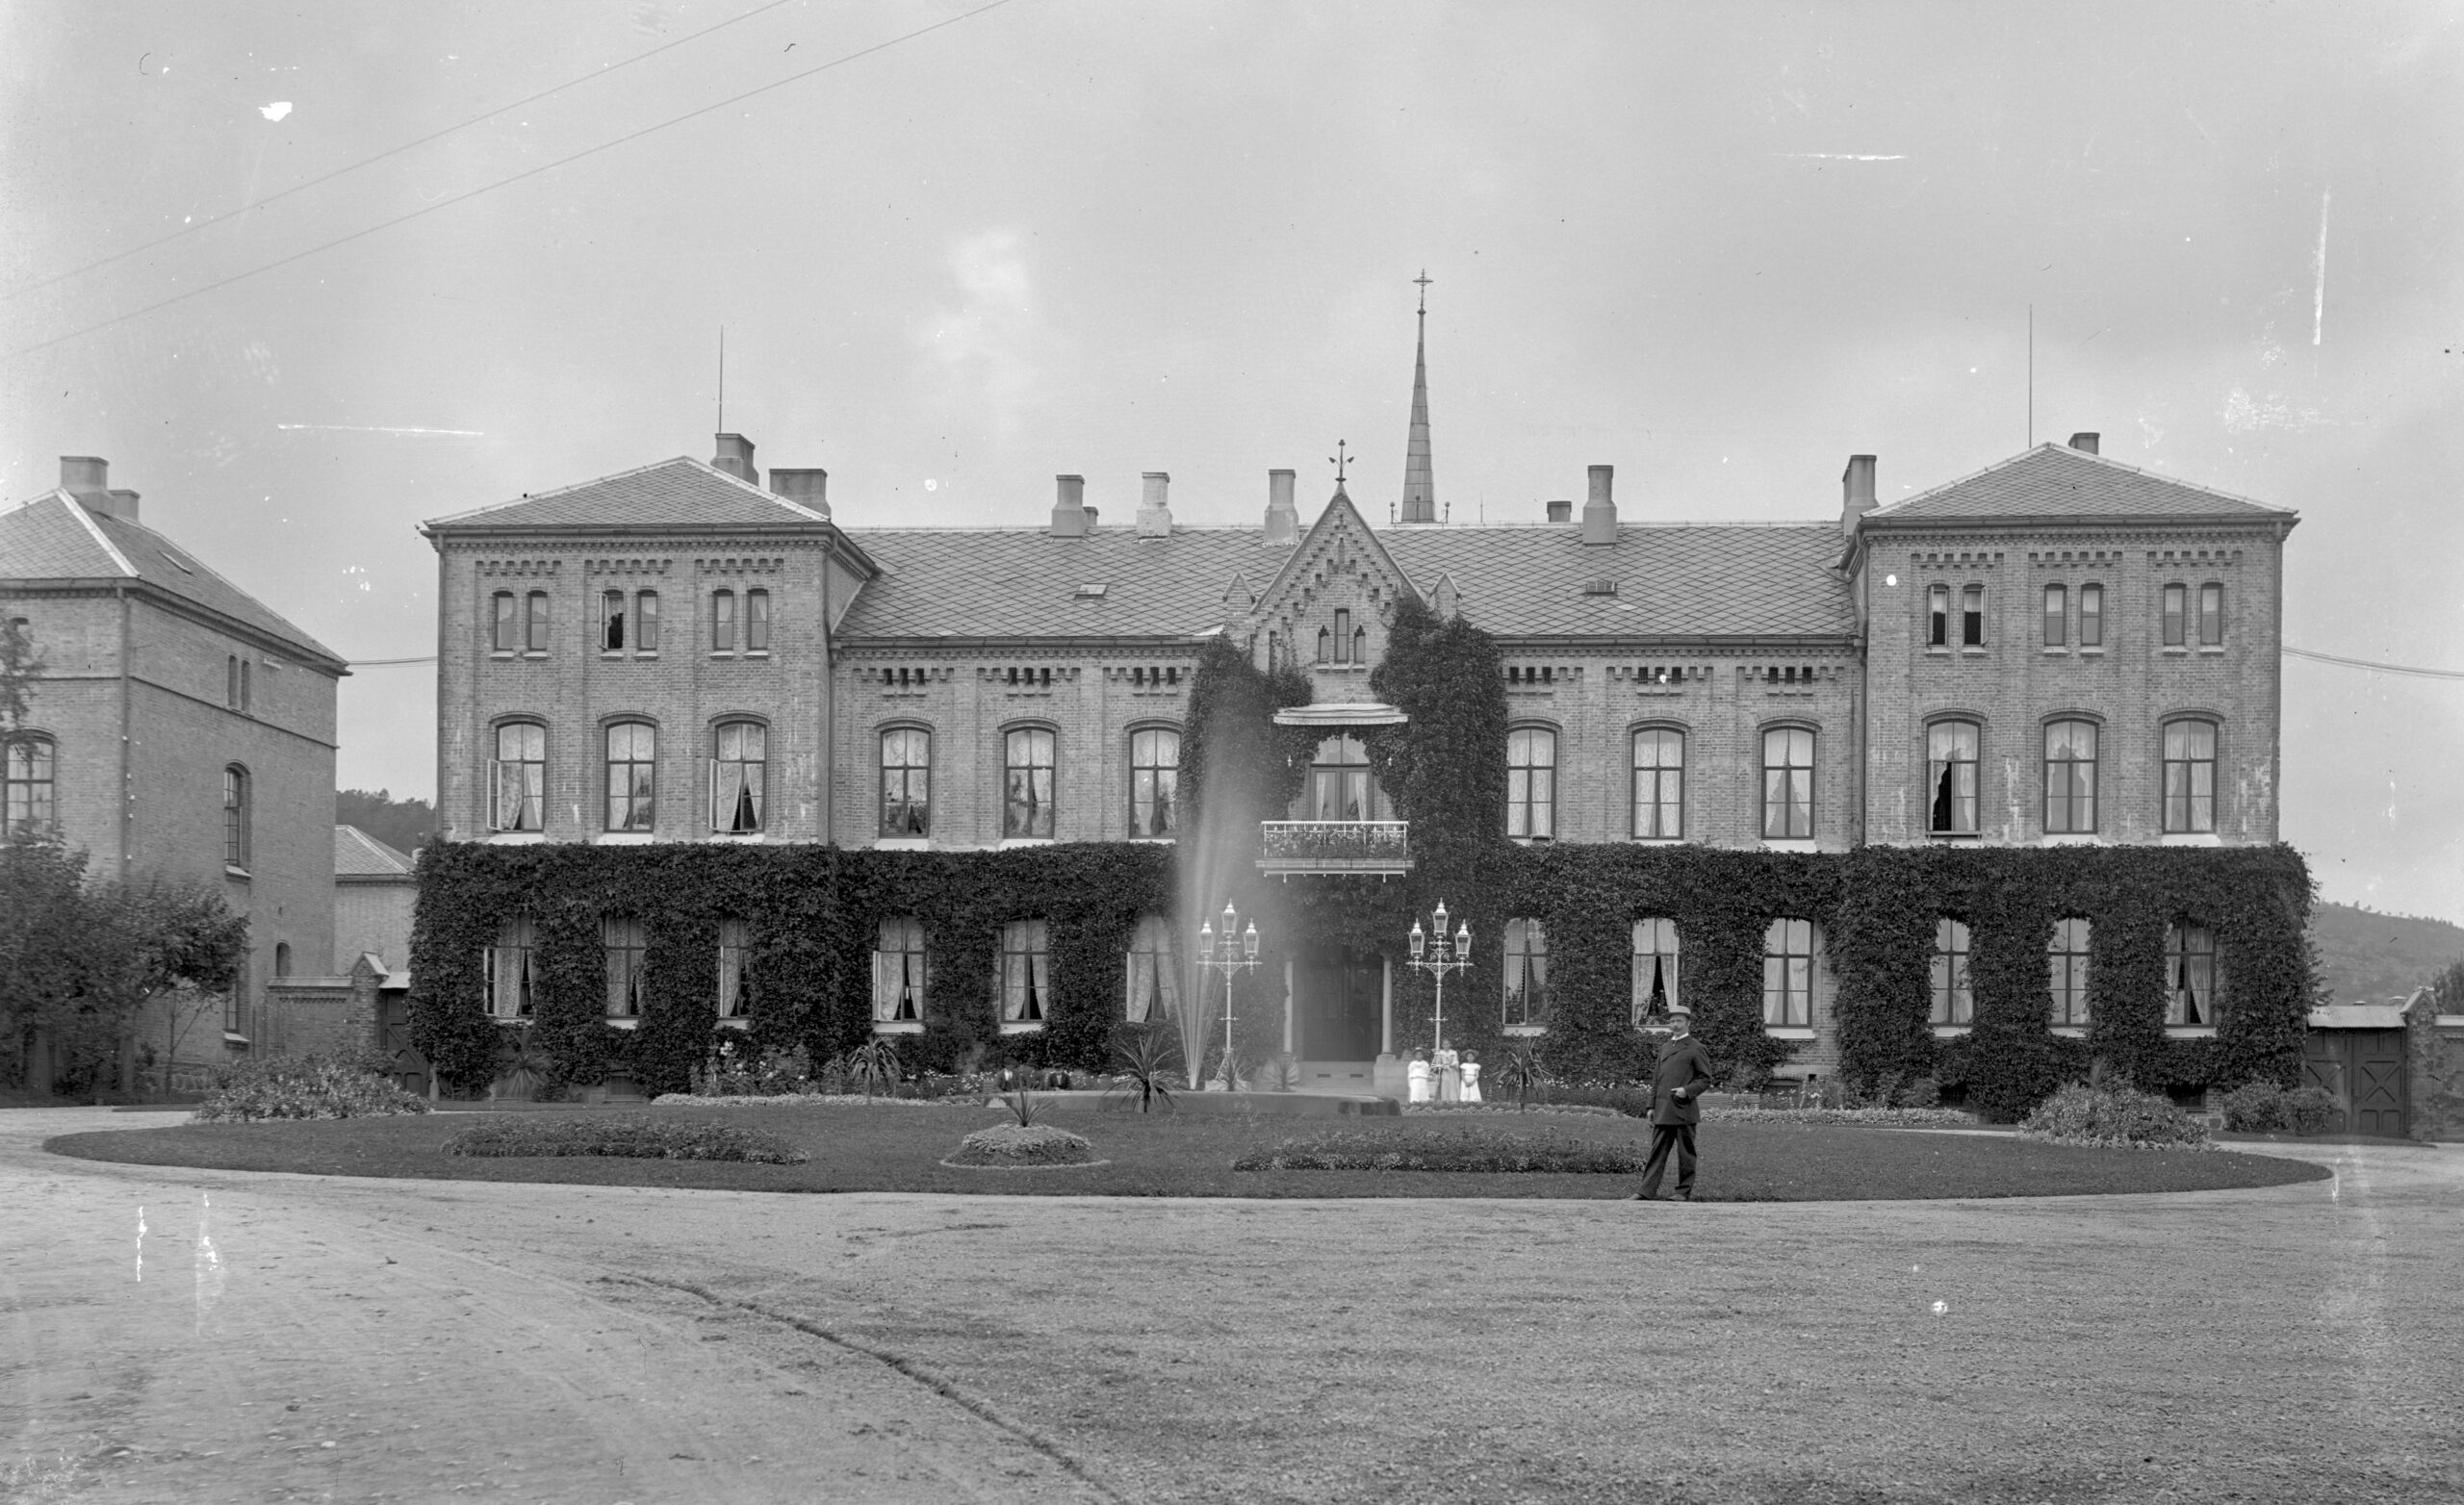 Eg Sindssyge og aandssvageasyl åpnet i 1881. Fotoet er datert til ca. 1910-1920. Foto Agderbilder